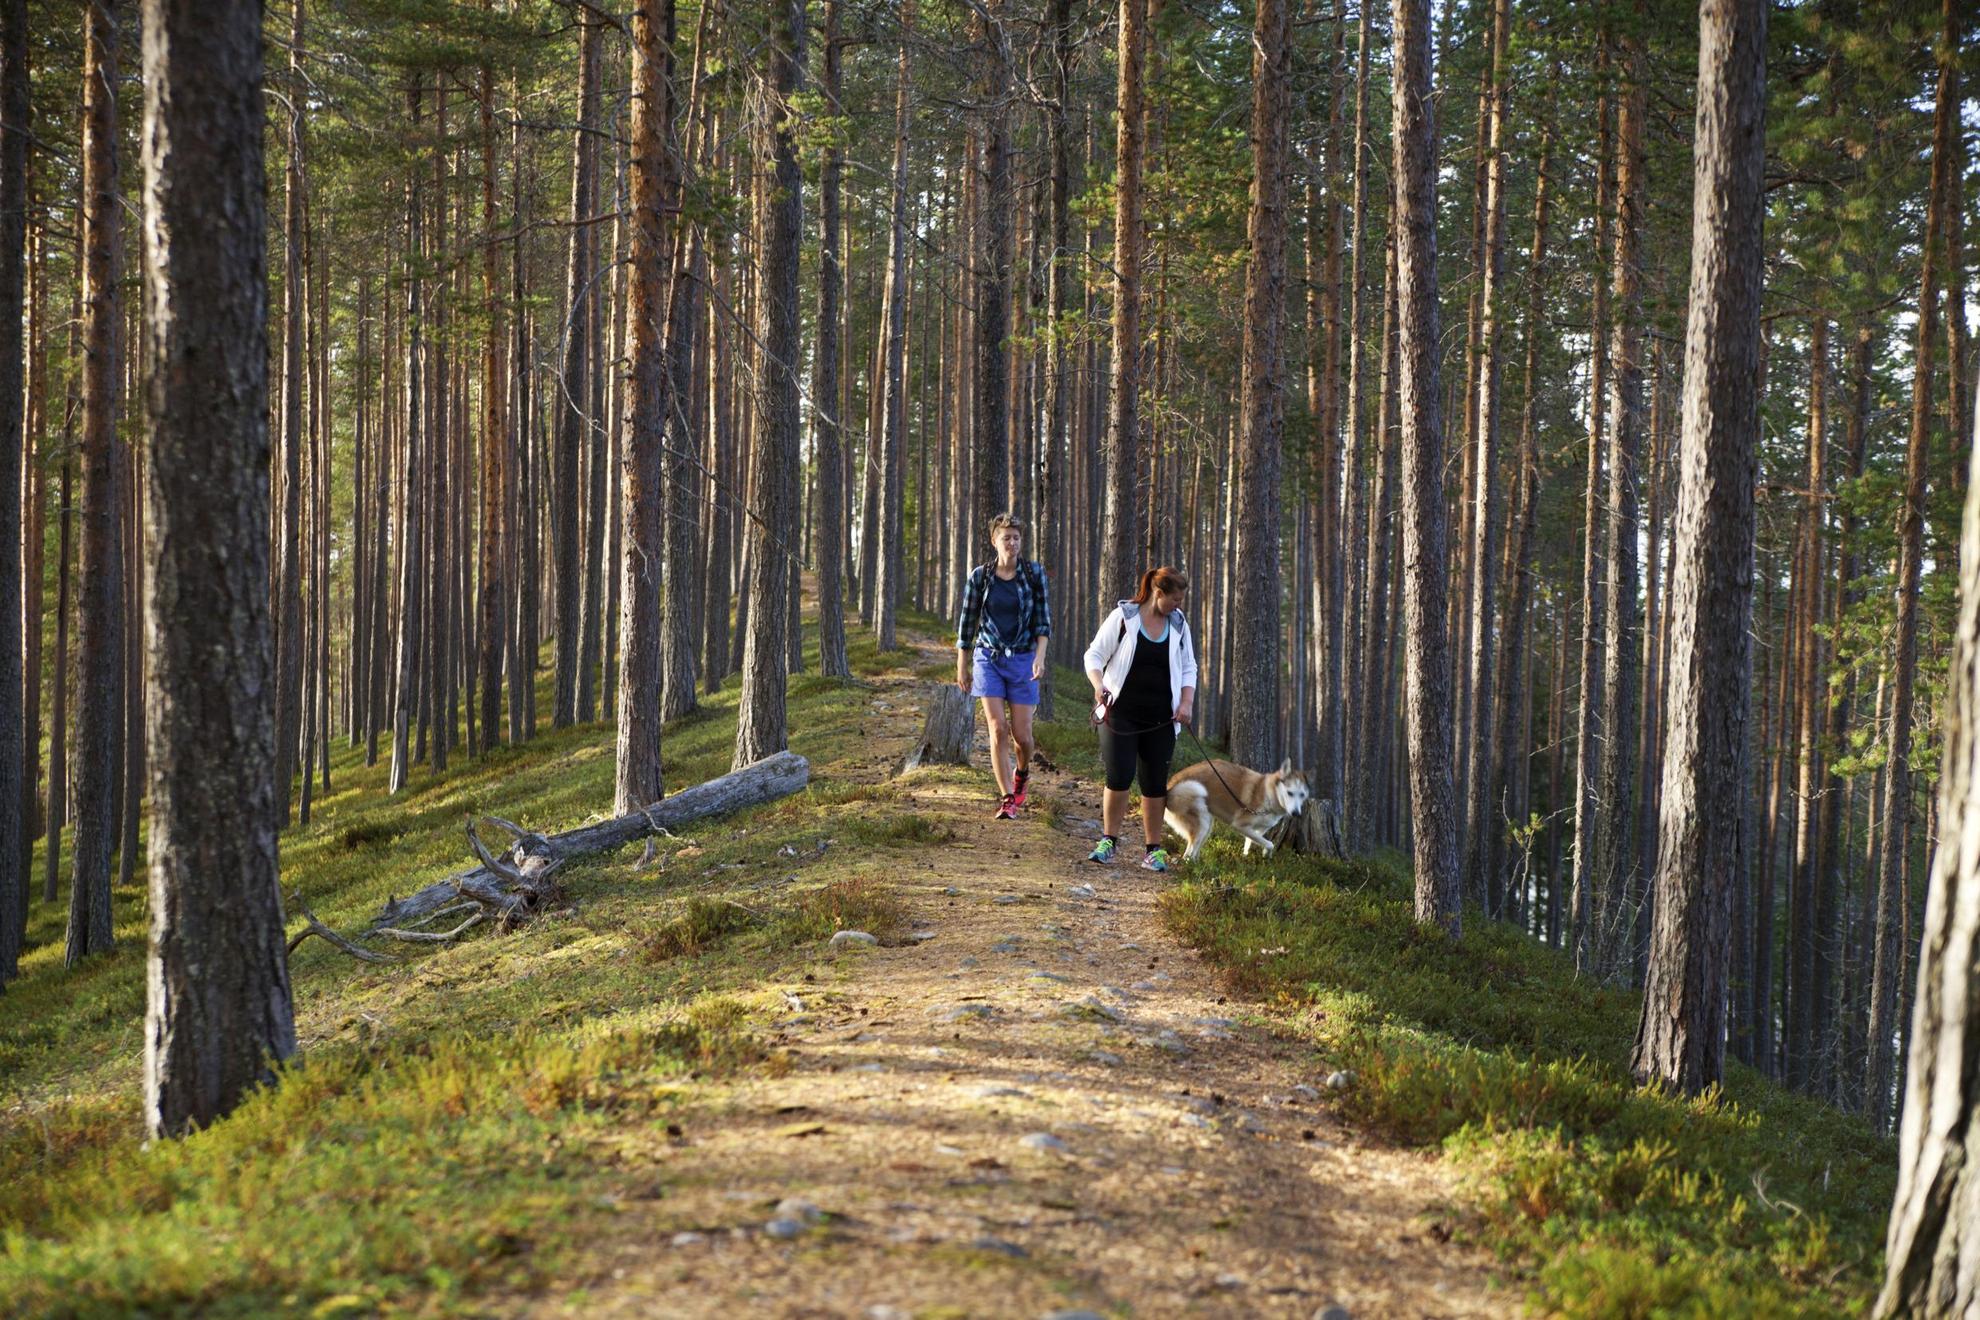 Twee mensen met een aangelijnde hond lopen op een wandelpad in een bos.